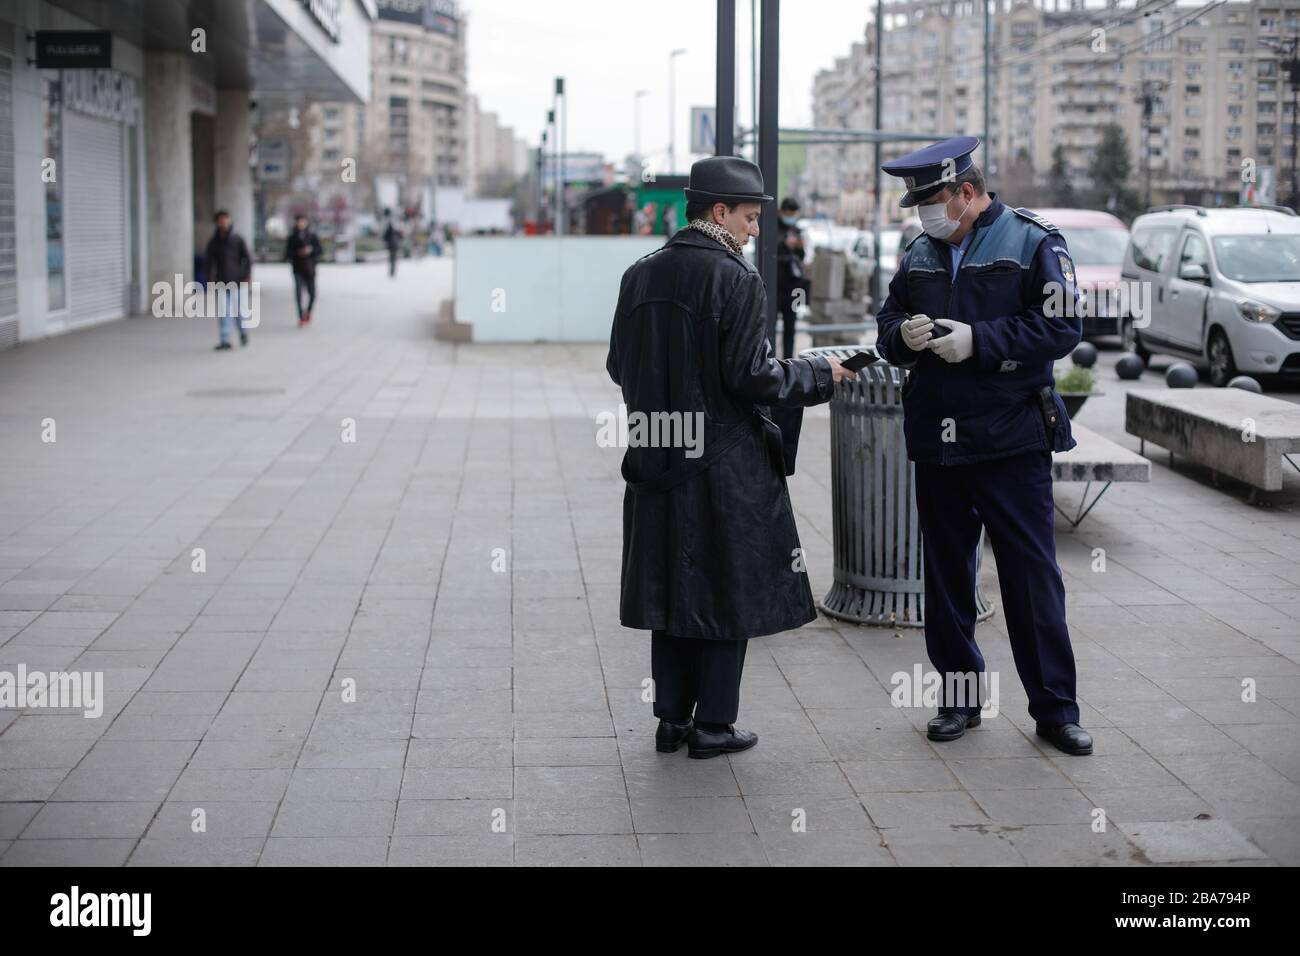 Bucarest, Romania - 25 marzo 2020: La polizia chiede alle persone di mostrare documenti di identità per applicare un giorno intero di blocco per limitare la diffusione del coronavirus. Foto Stock